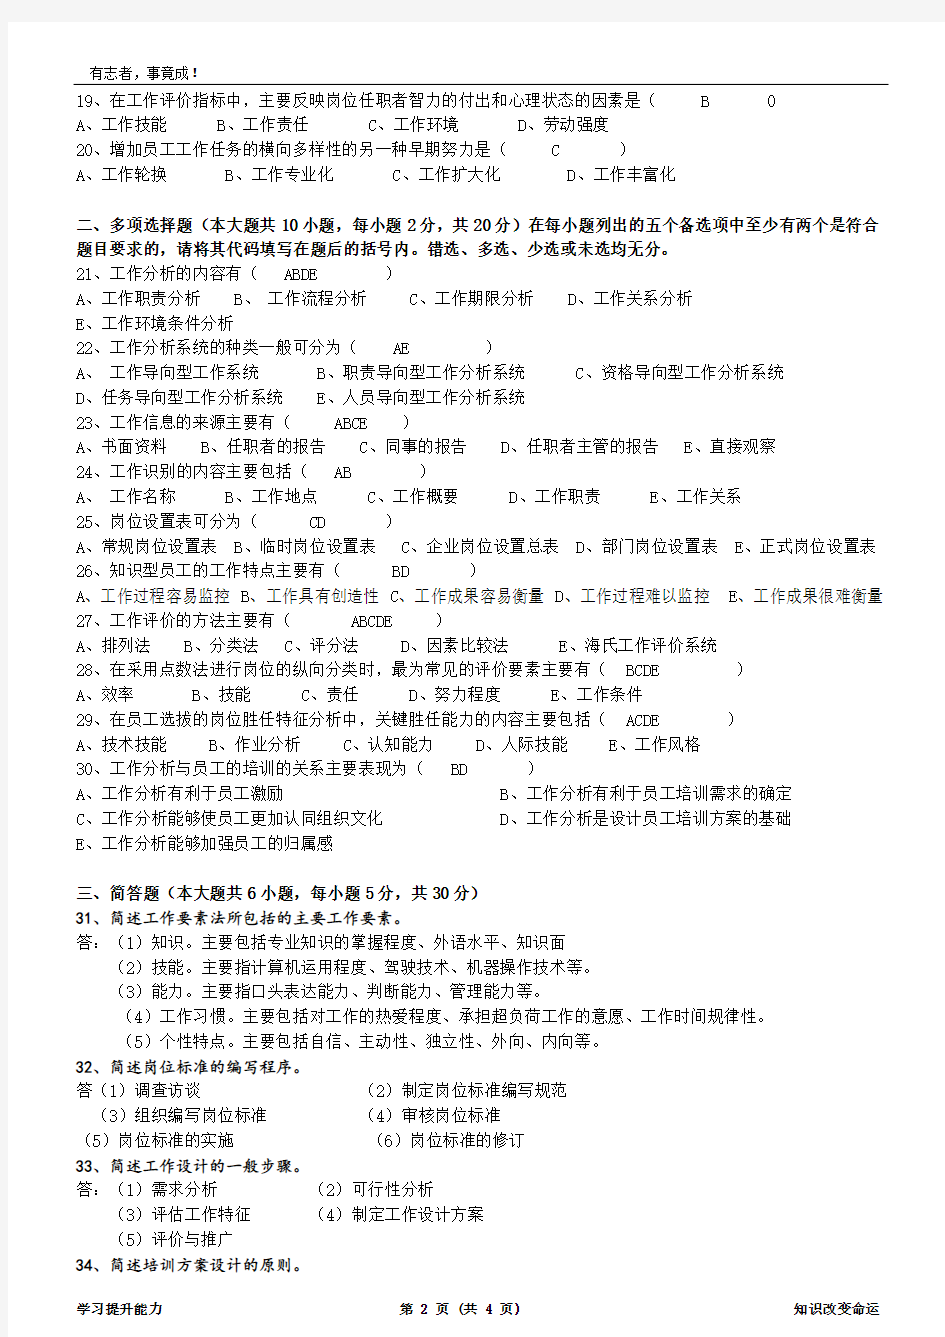 2016年1月广东省工作分析自学考试真题卷及答案